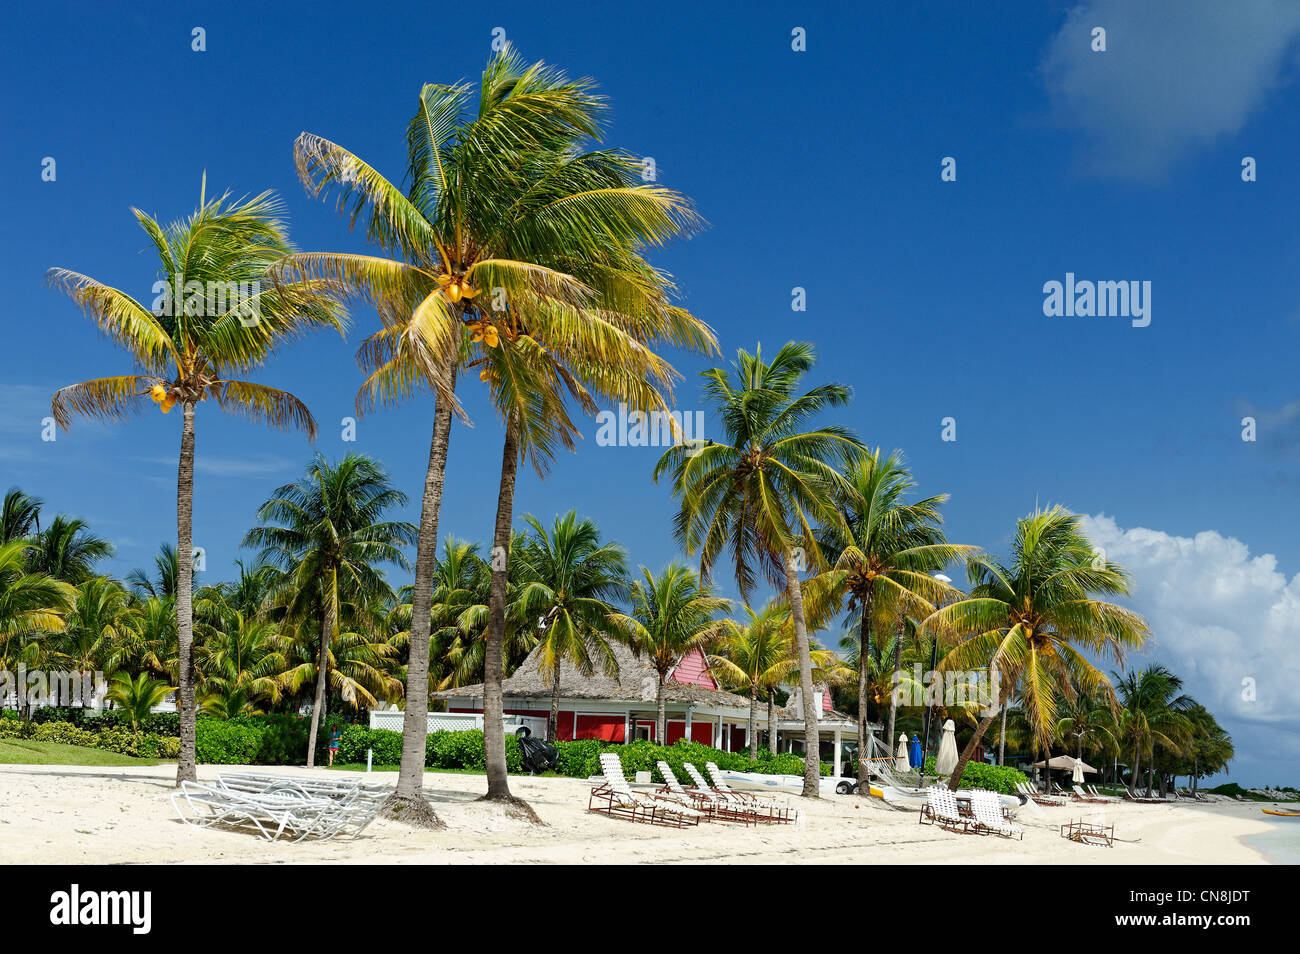 Bahamas, Grand Bahama Island, West End, Old Bahama Bay, plage de sable blanc bordée de cocotiers qui abritent des bungalows Banque D'Images